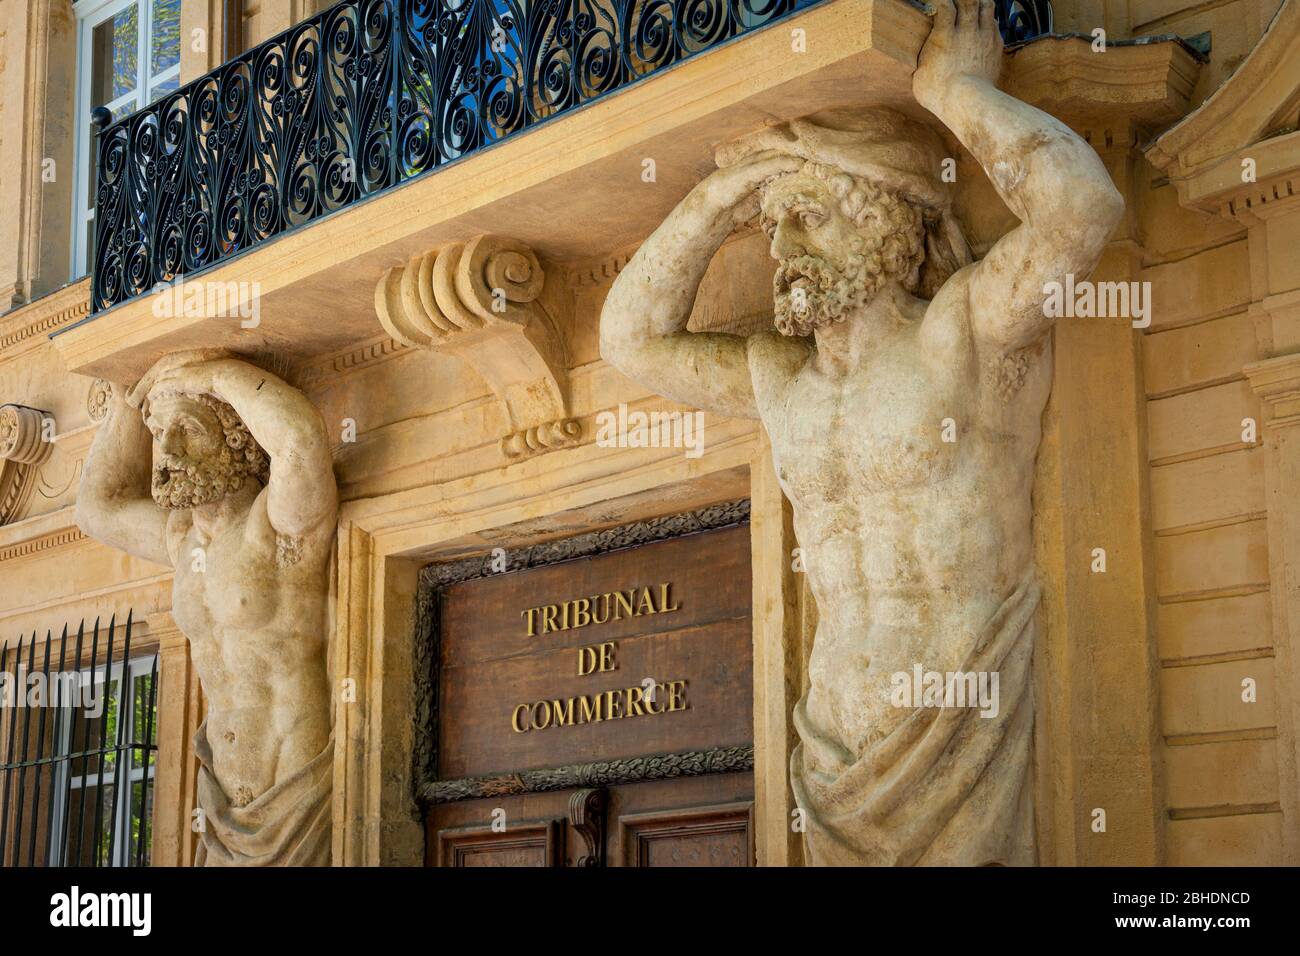 Männliche Statuen am Eingang des Tribunal de Commerce Gebäudes in Aix-en-Provence, Frankreich Stockfoto